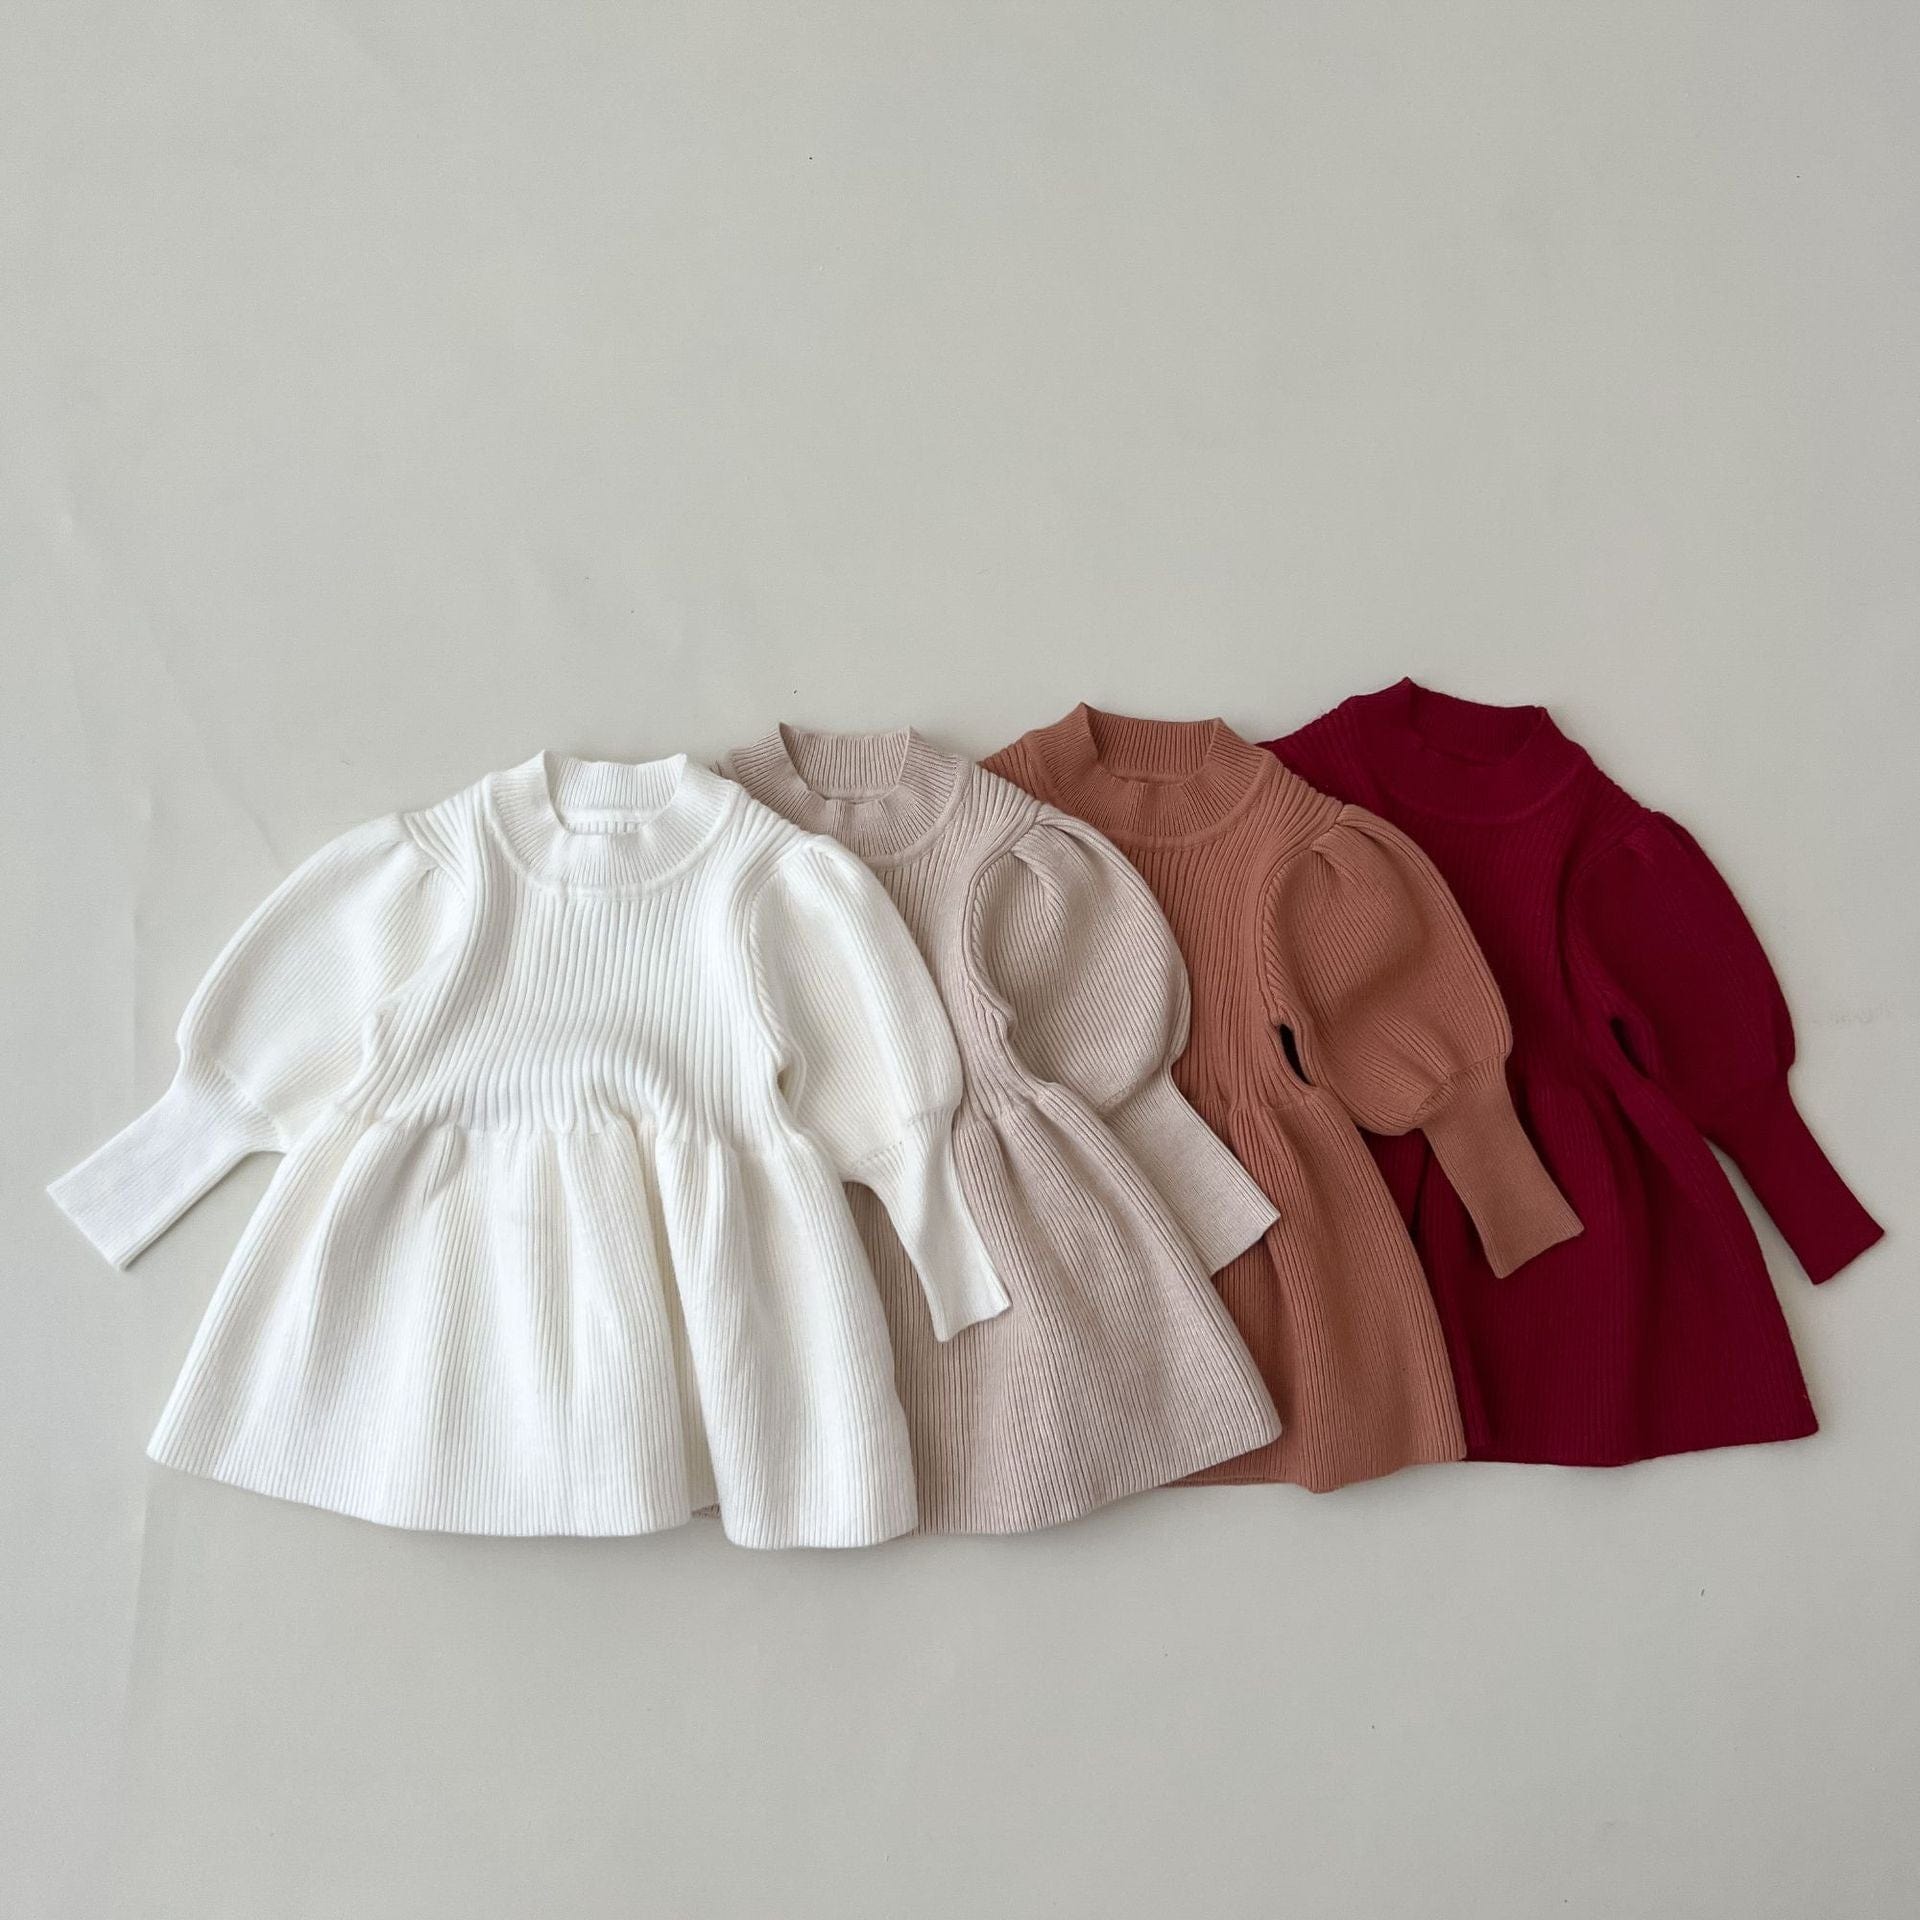 Michael Kors Kids - Teen Girls Brown Sweater Dress | Childrensalon Outlet